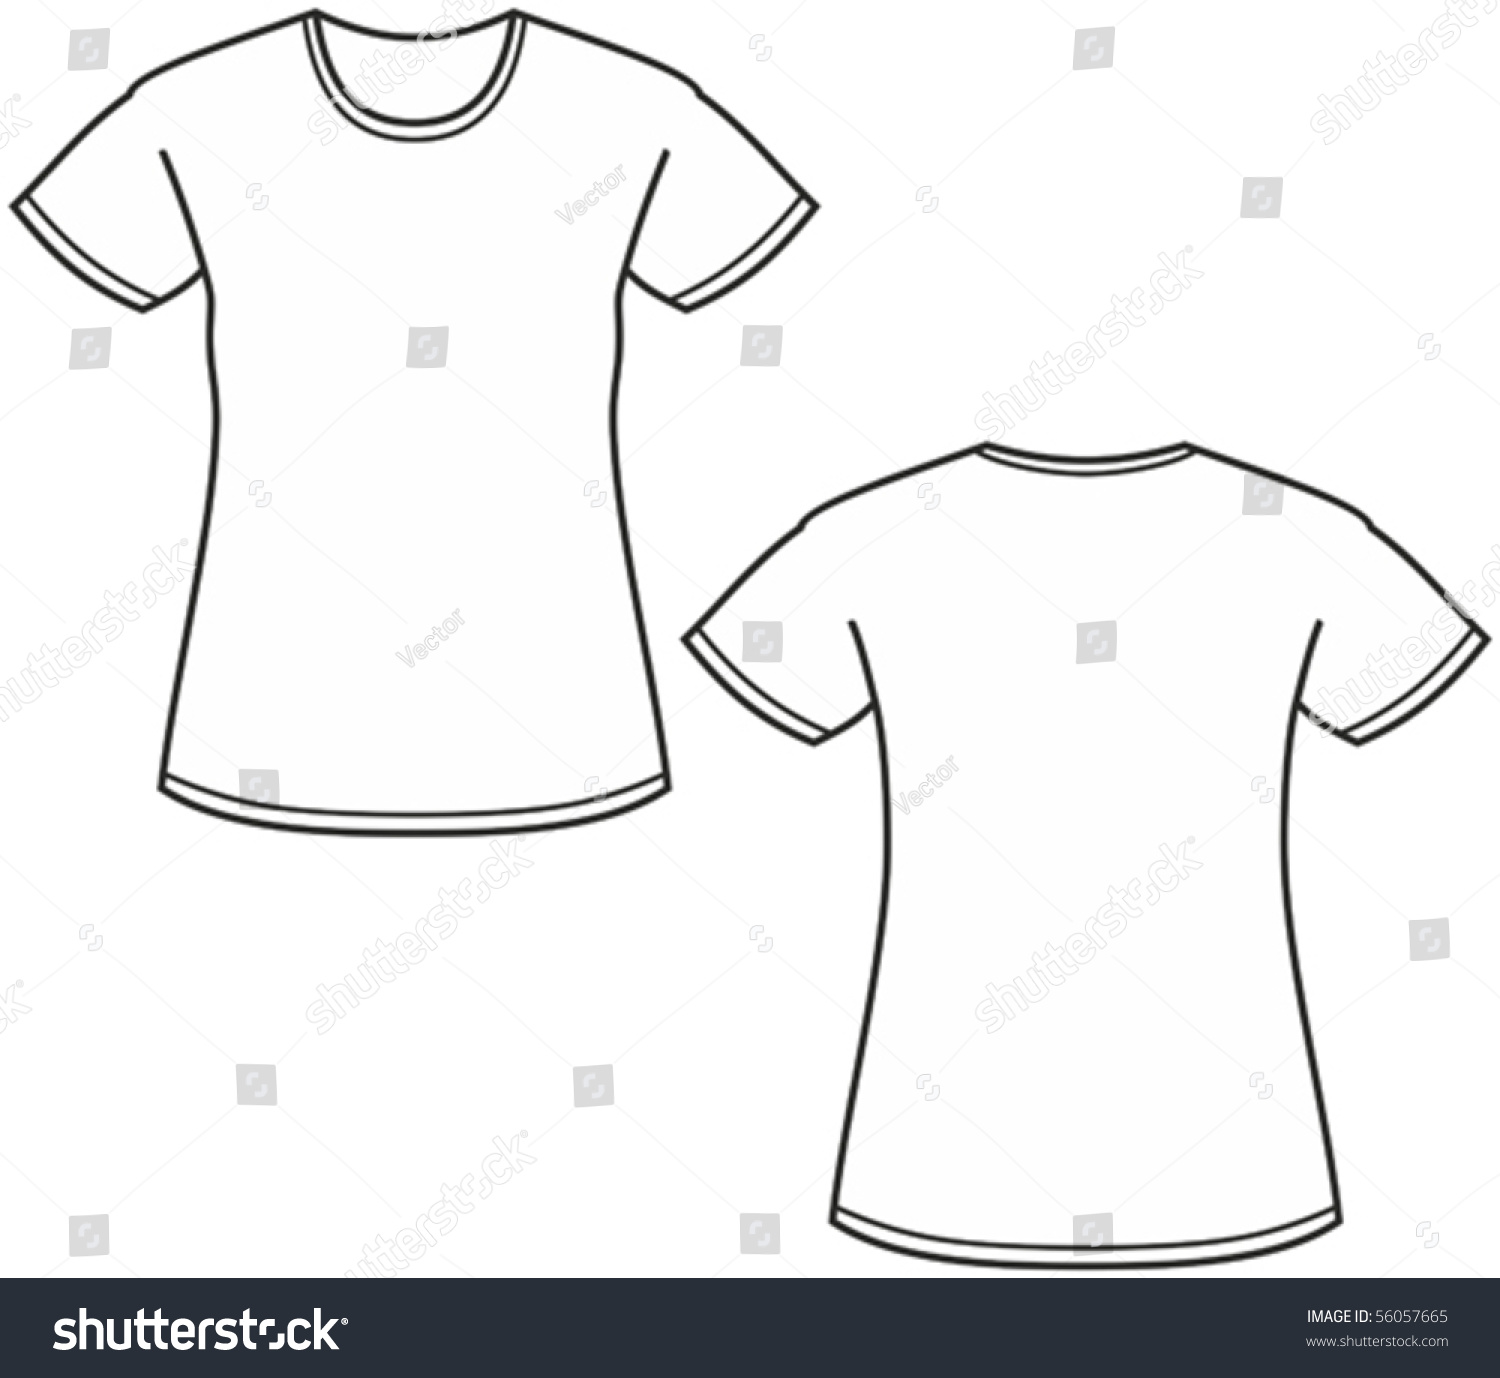 Women'S T-Shirt Illustration - 56057665 : Shutterstock